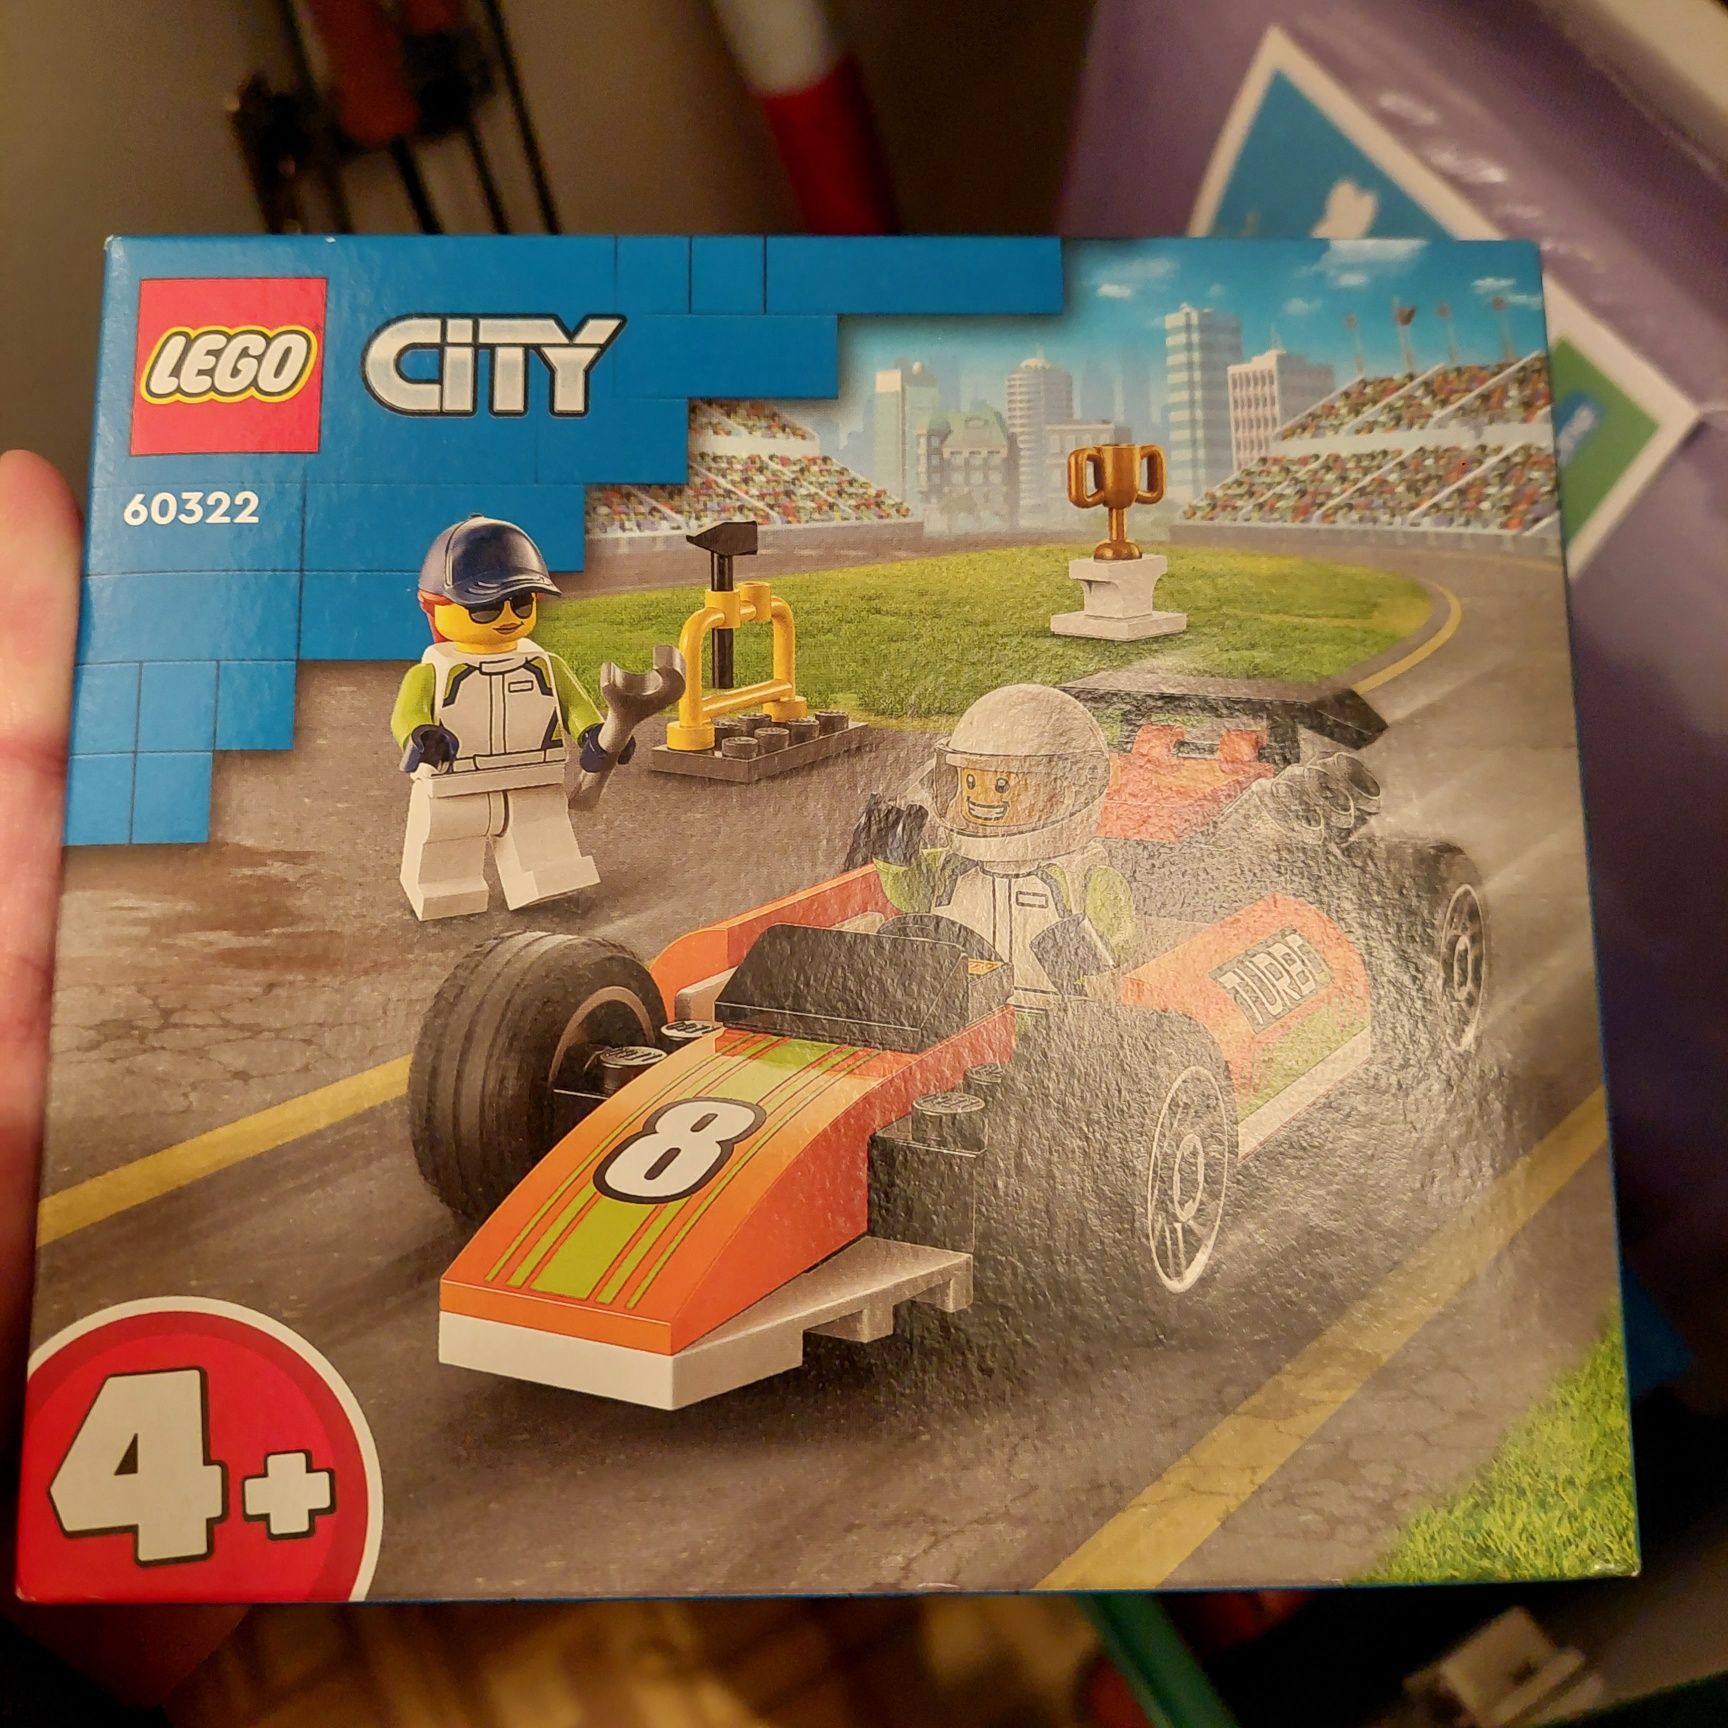 LEGO City 60322 Samochód wyścigowy, nowe